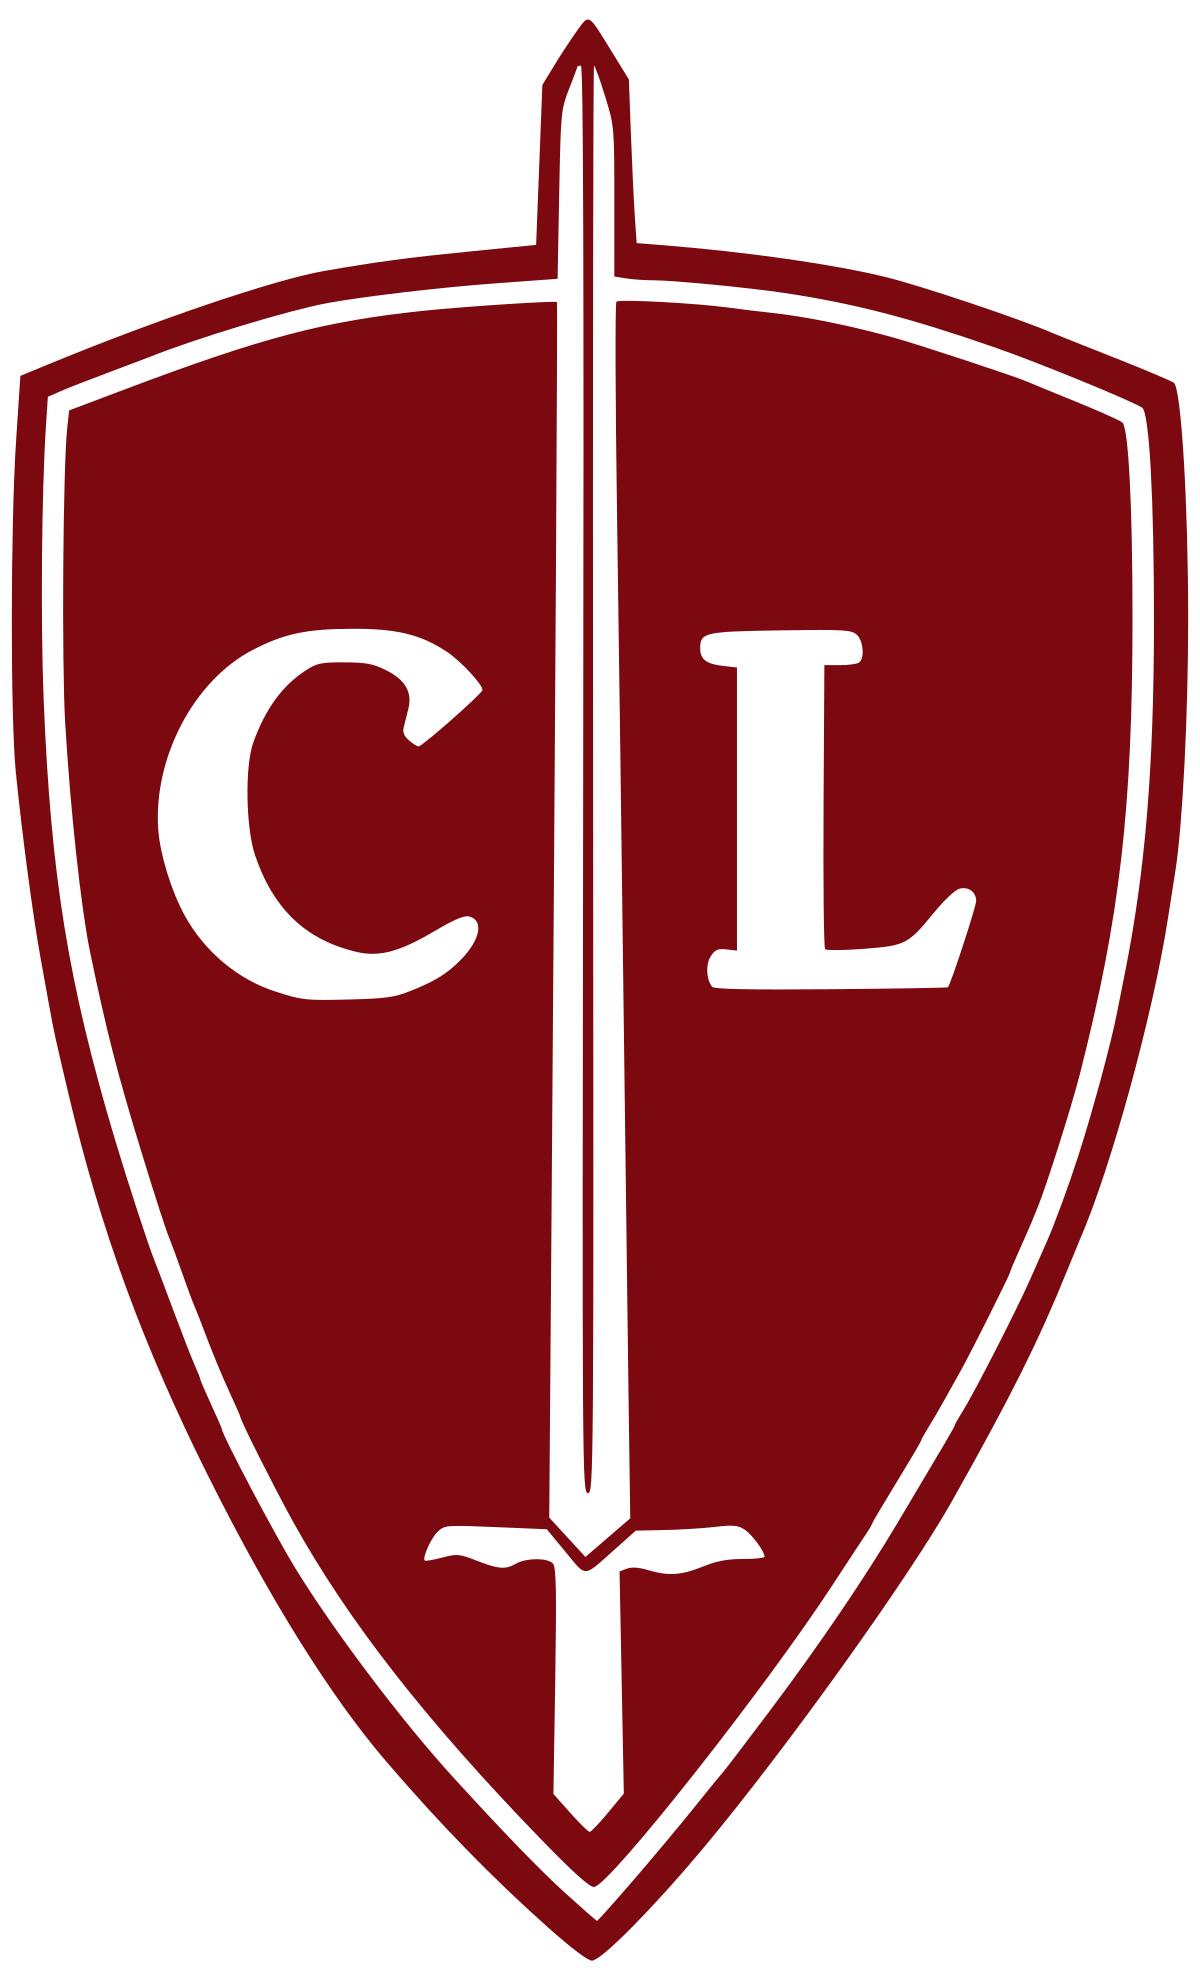 Catholic League (U.S.) pic